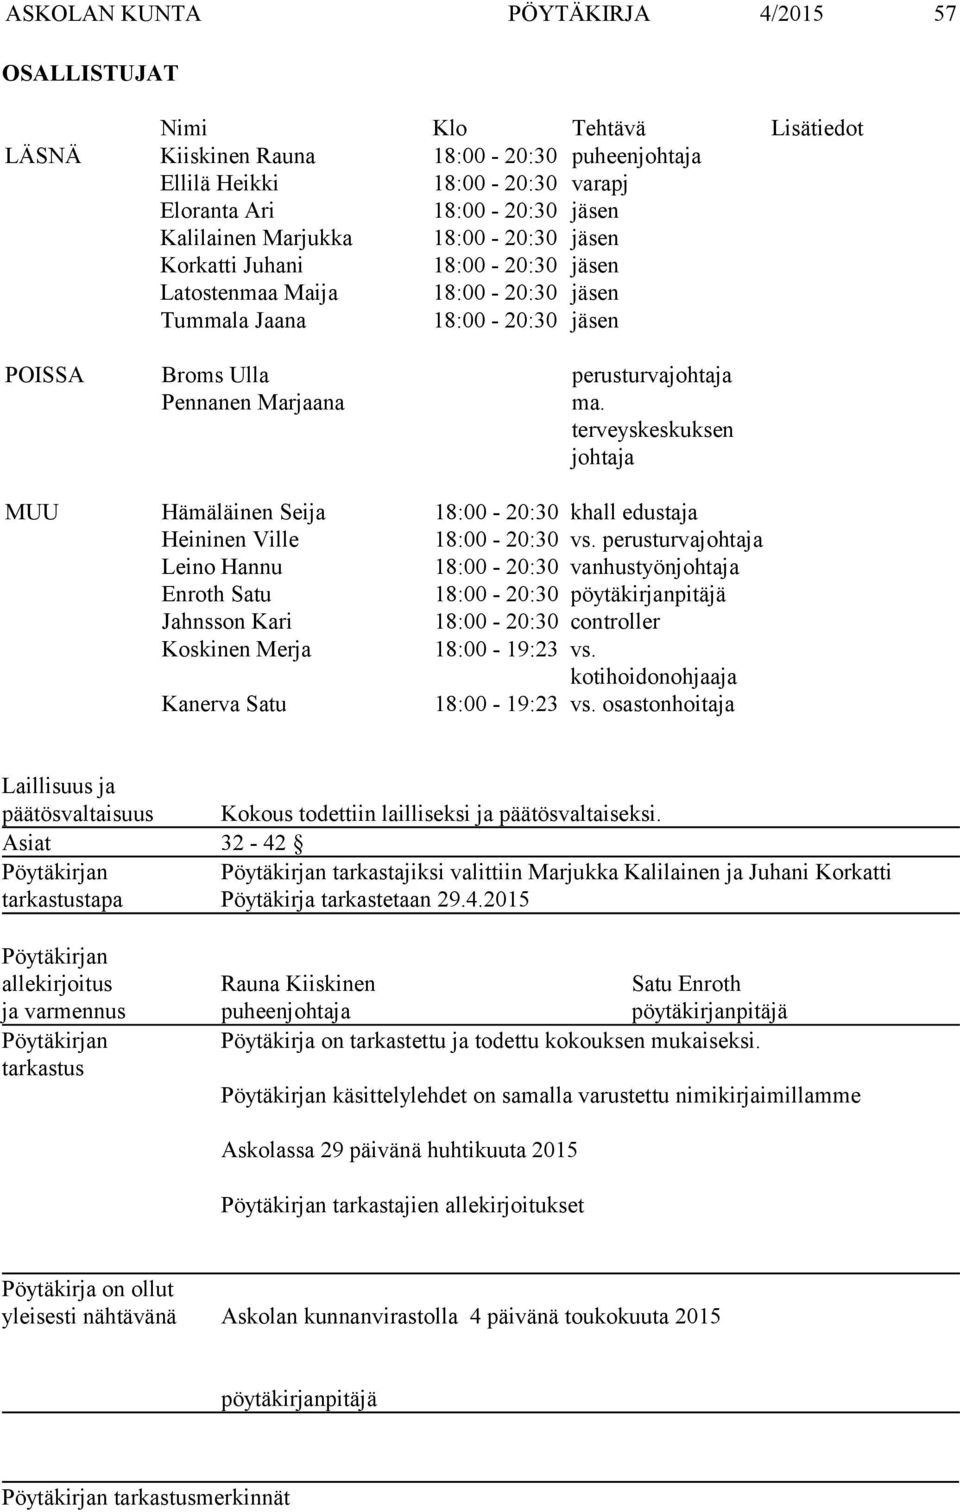 terveyskeskuksen johtaja MUU Hämäläinen Seija 18:00-20:30 khall edustaja Heininen Ville 18:00-20:30 vs.